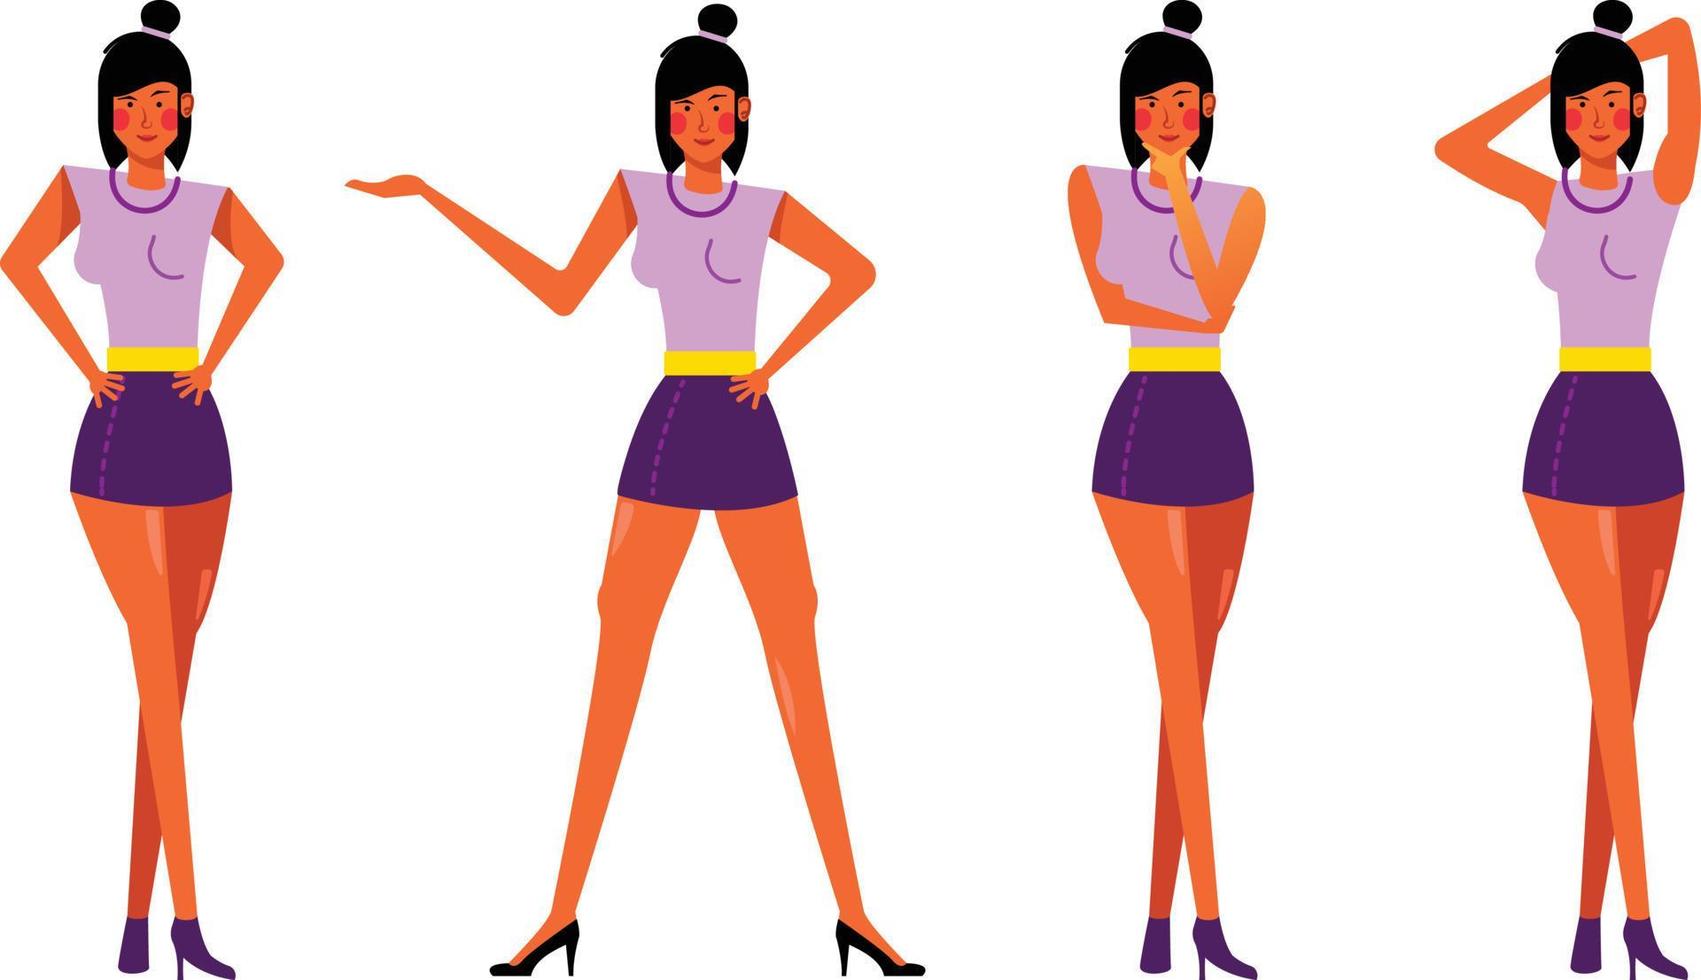 modell flicka poserar platt vektor illustration set för mode tema mall, affisch, banner eller presentation